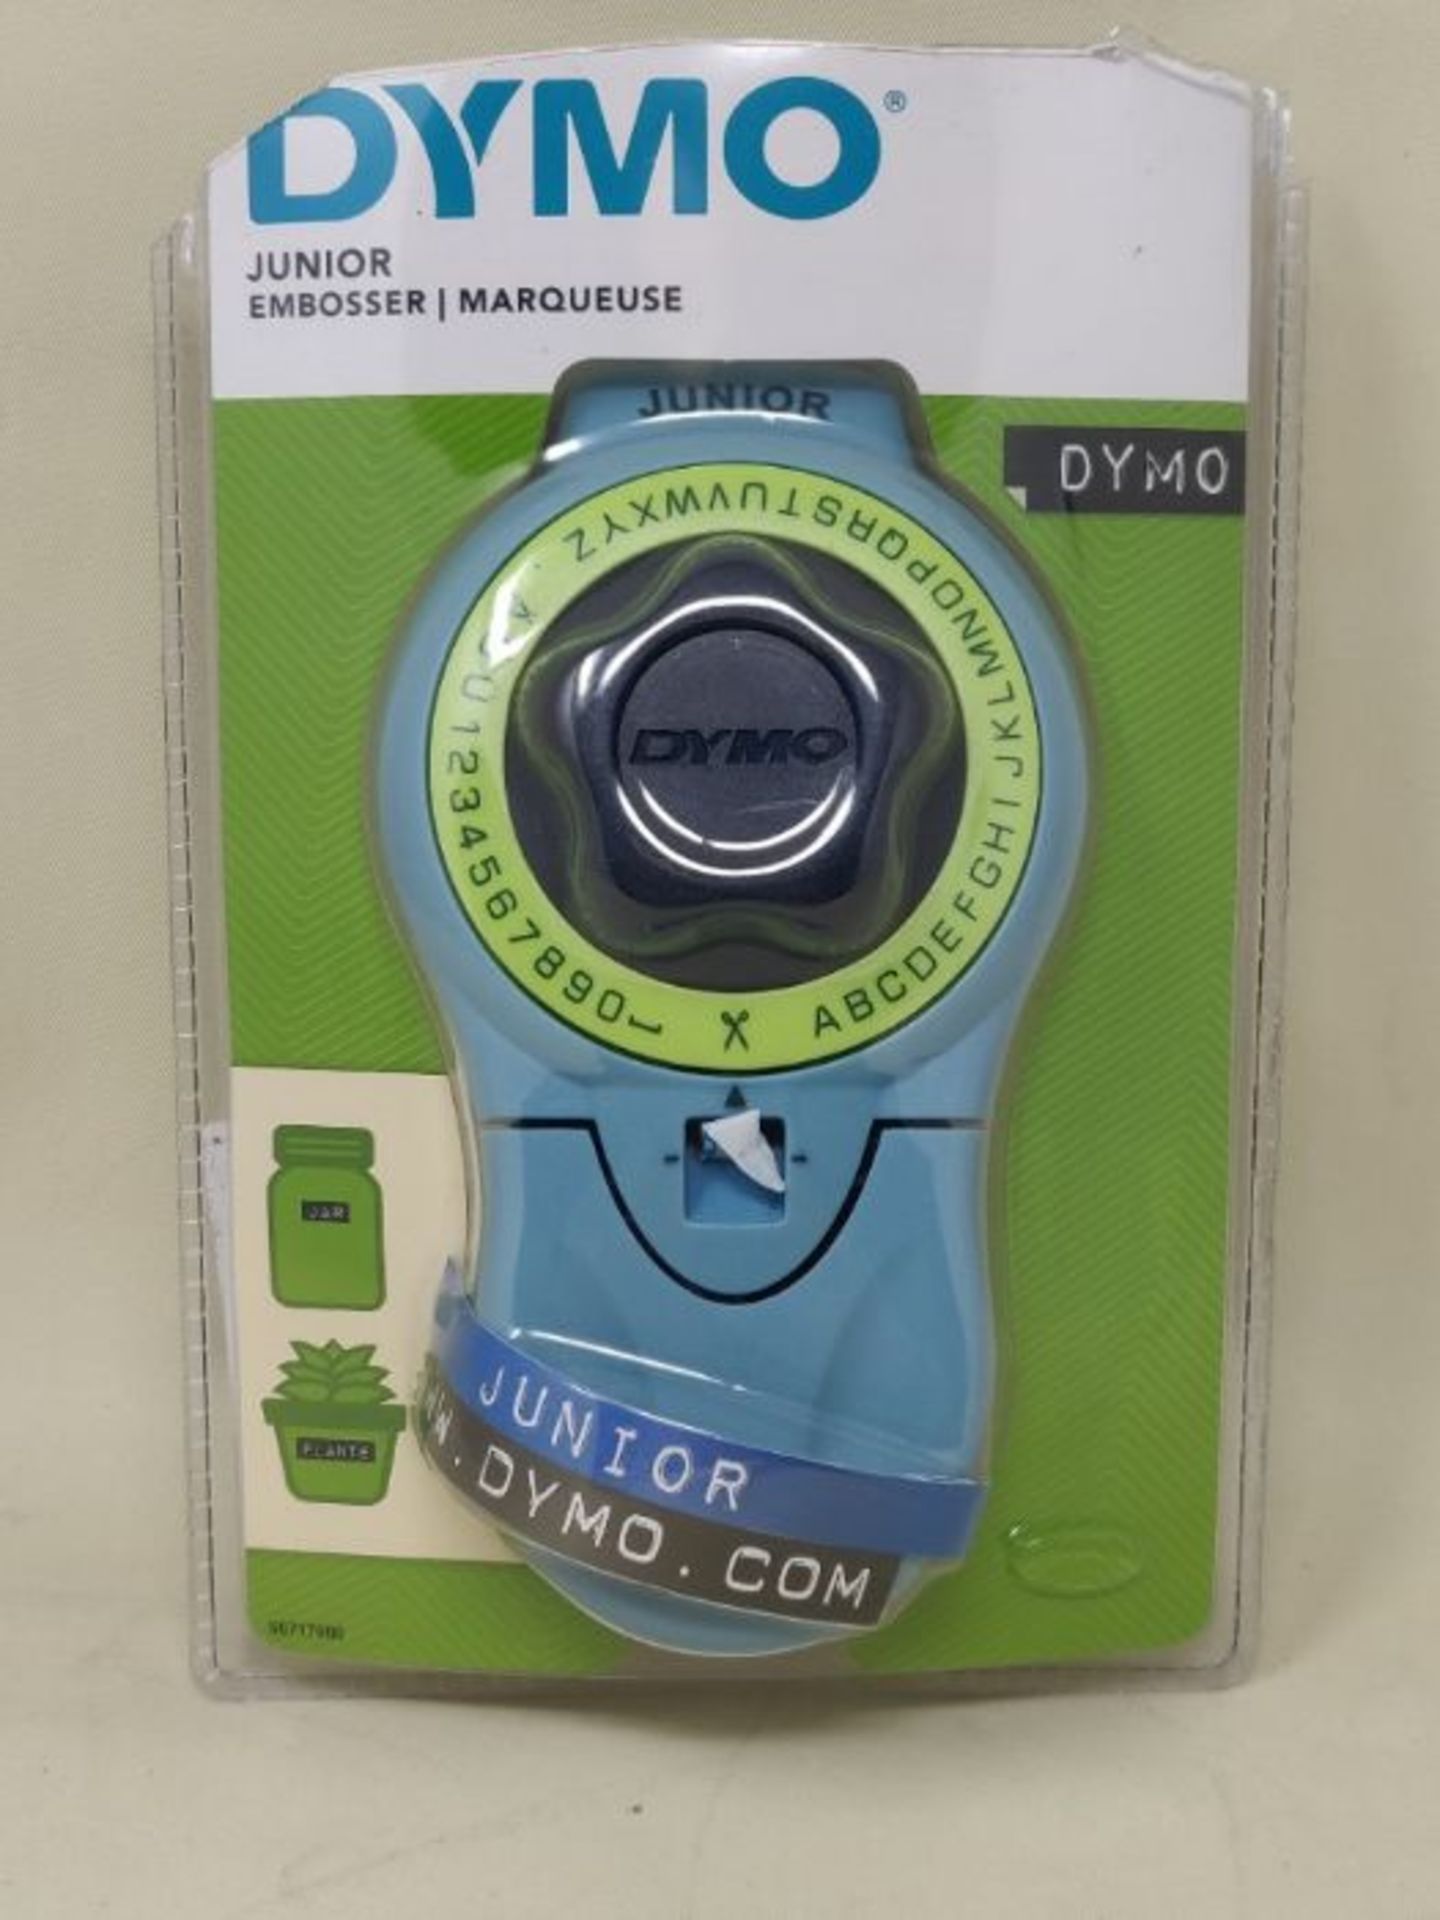 Dymo Junior Embosser Home Embossing Label Maker - Image 2 of 3